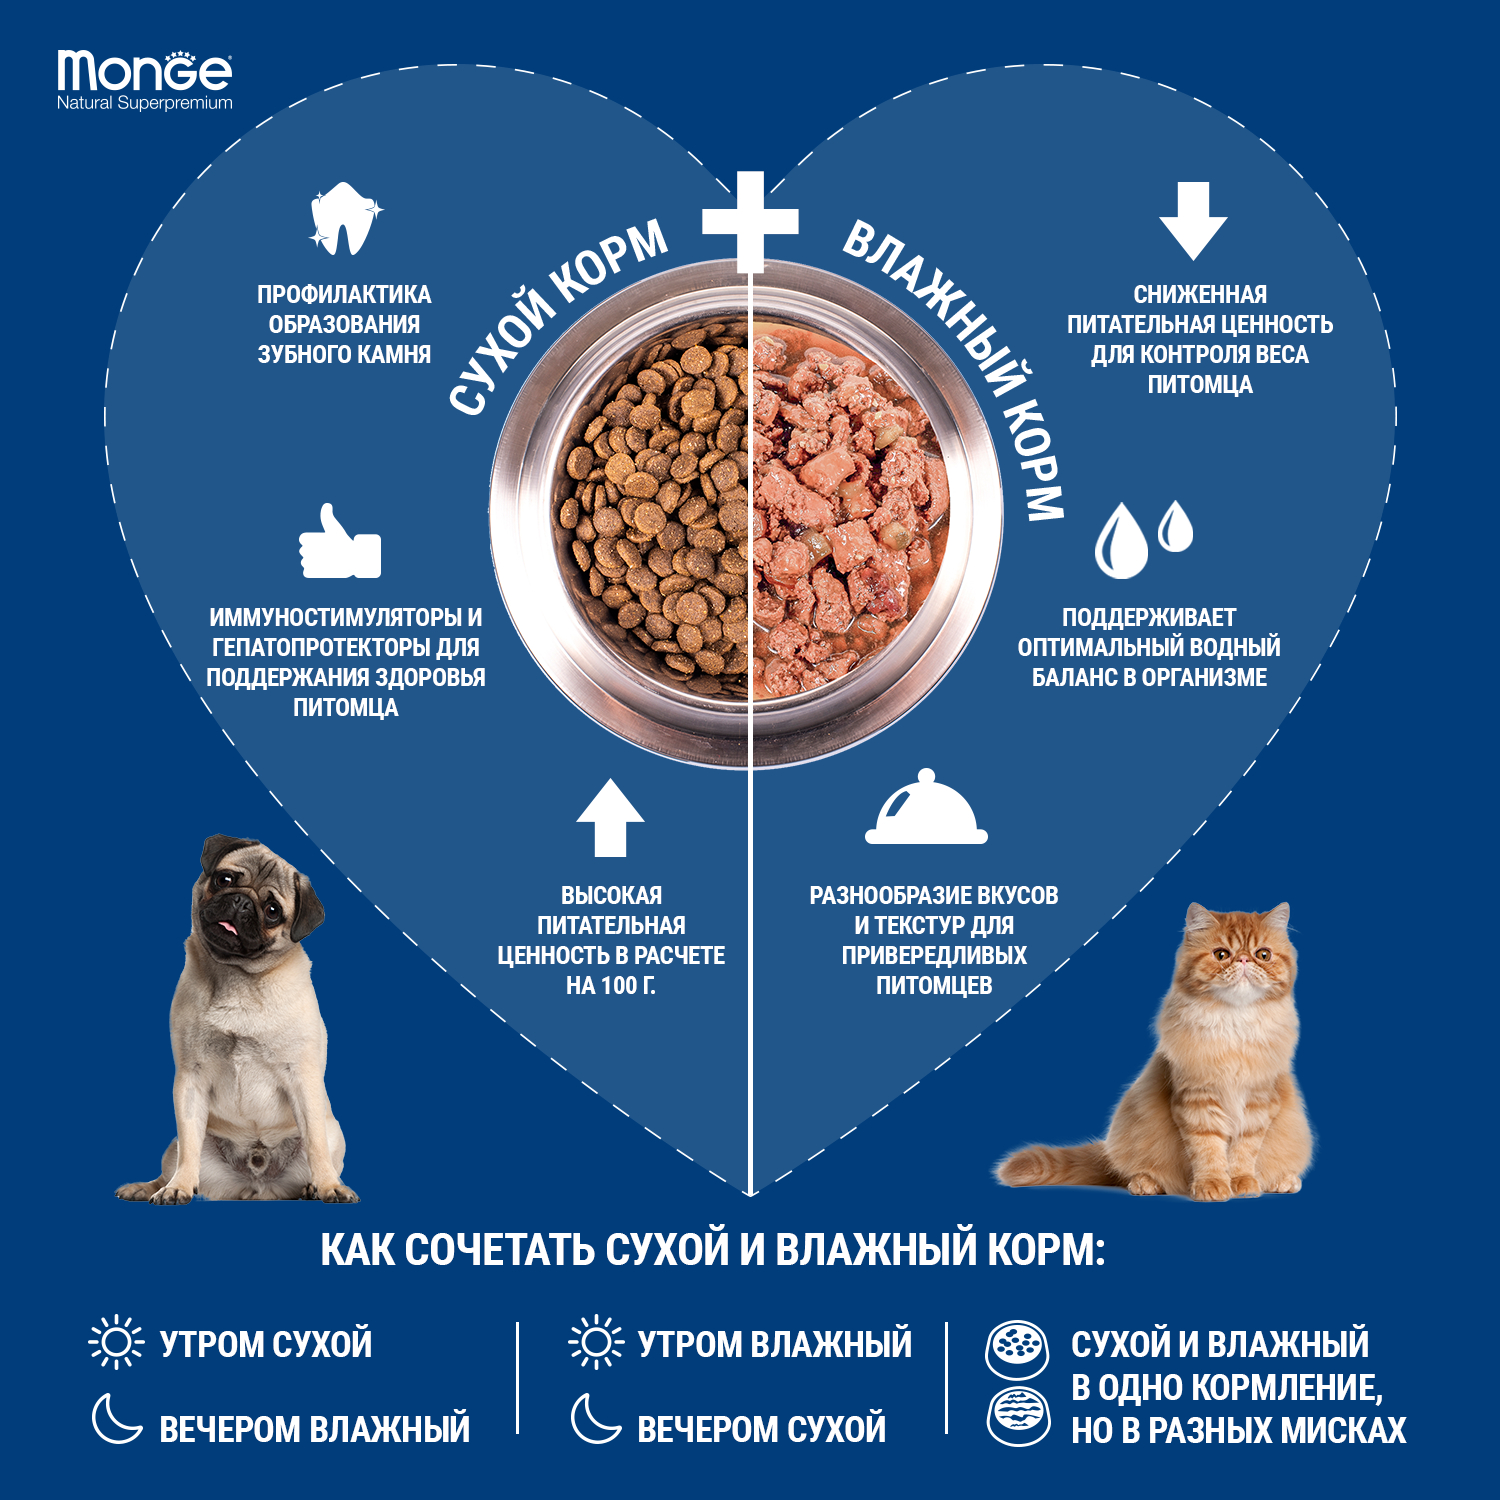 Сухой корм Monge Dog Speciality Line Monoprotein All Breeds Beef and Rice для взрослых собак всех пород, из говядины с рисом 2,5 кг